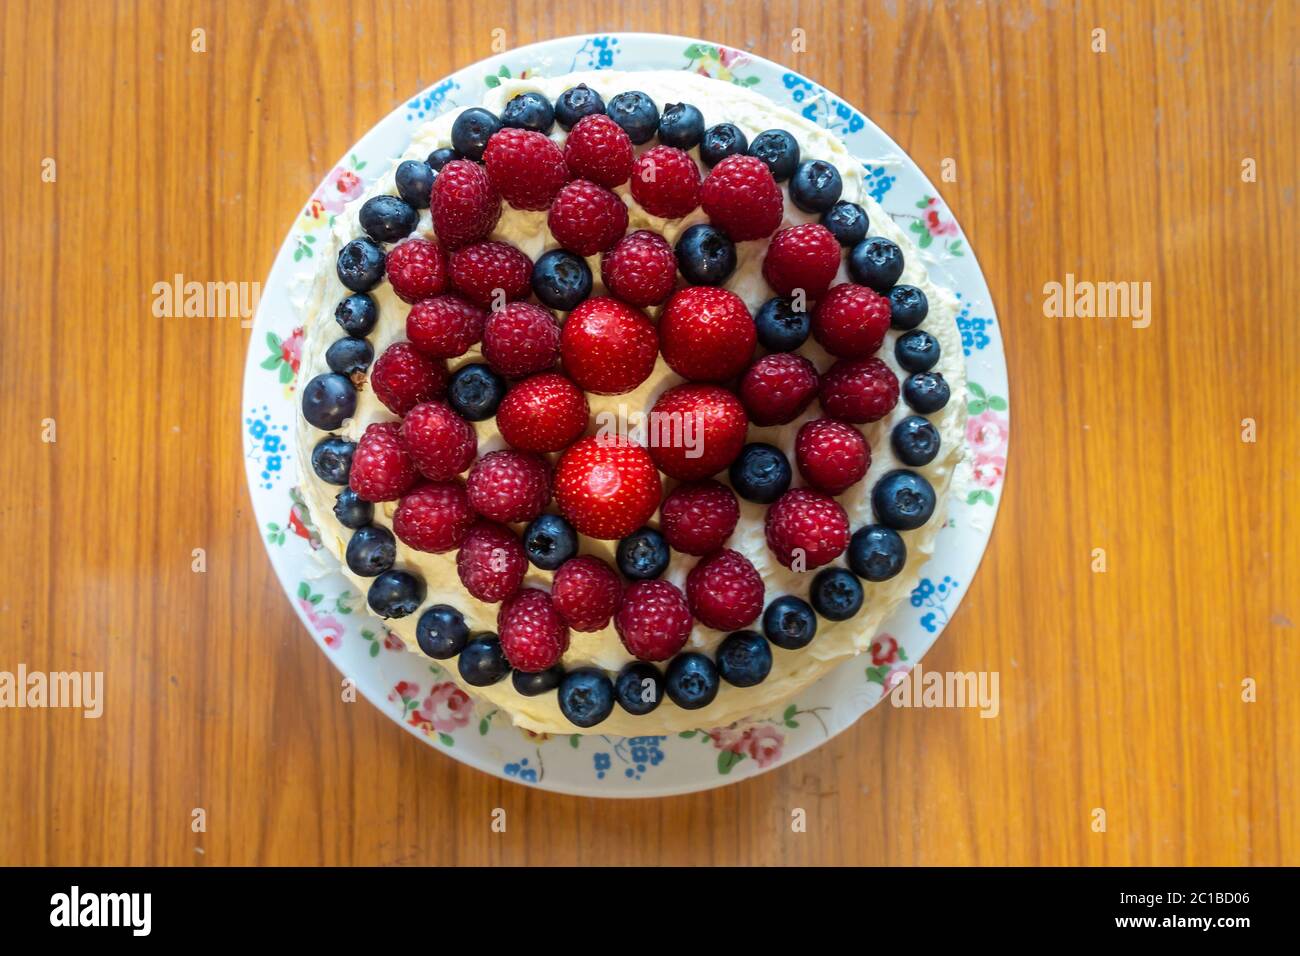 Ein Kuchen mit Buttereier und Sommerfrüchten wie Erdbeeren, Himbeeren und Heidelbeeren. Stockfoto